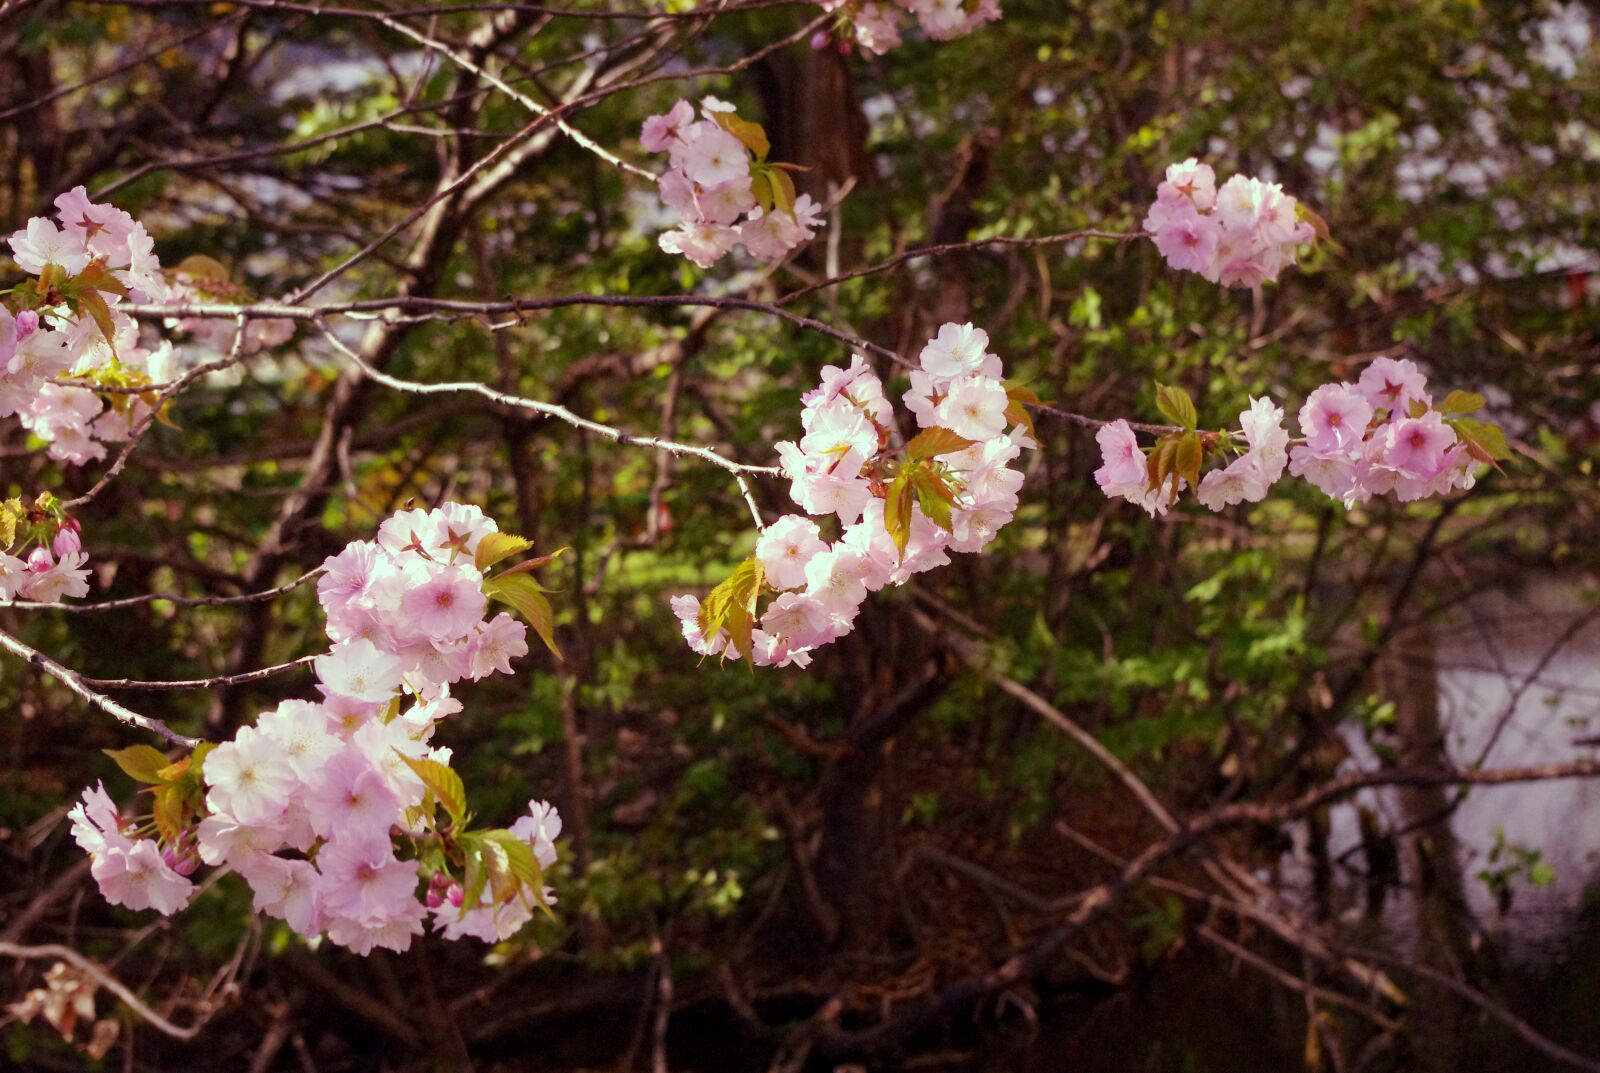 Pentax K-r sample photo. Sakura, flower, pastel photography